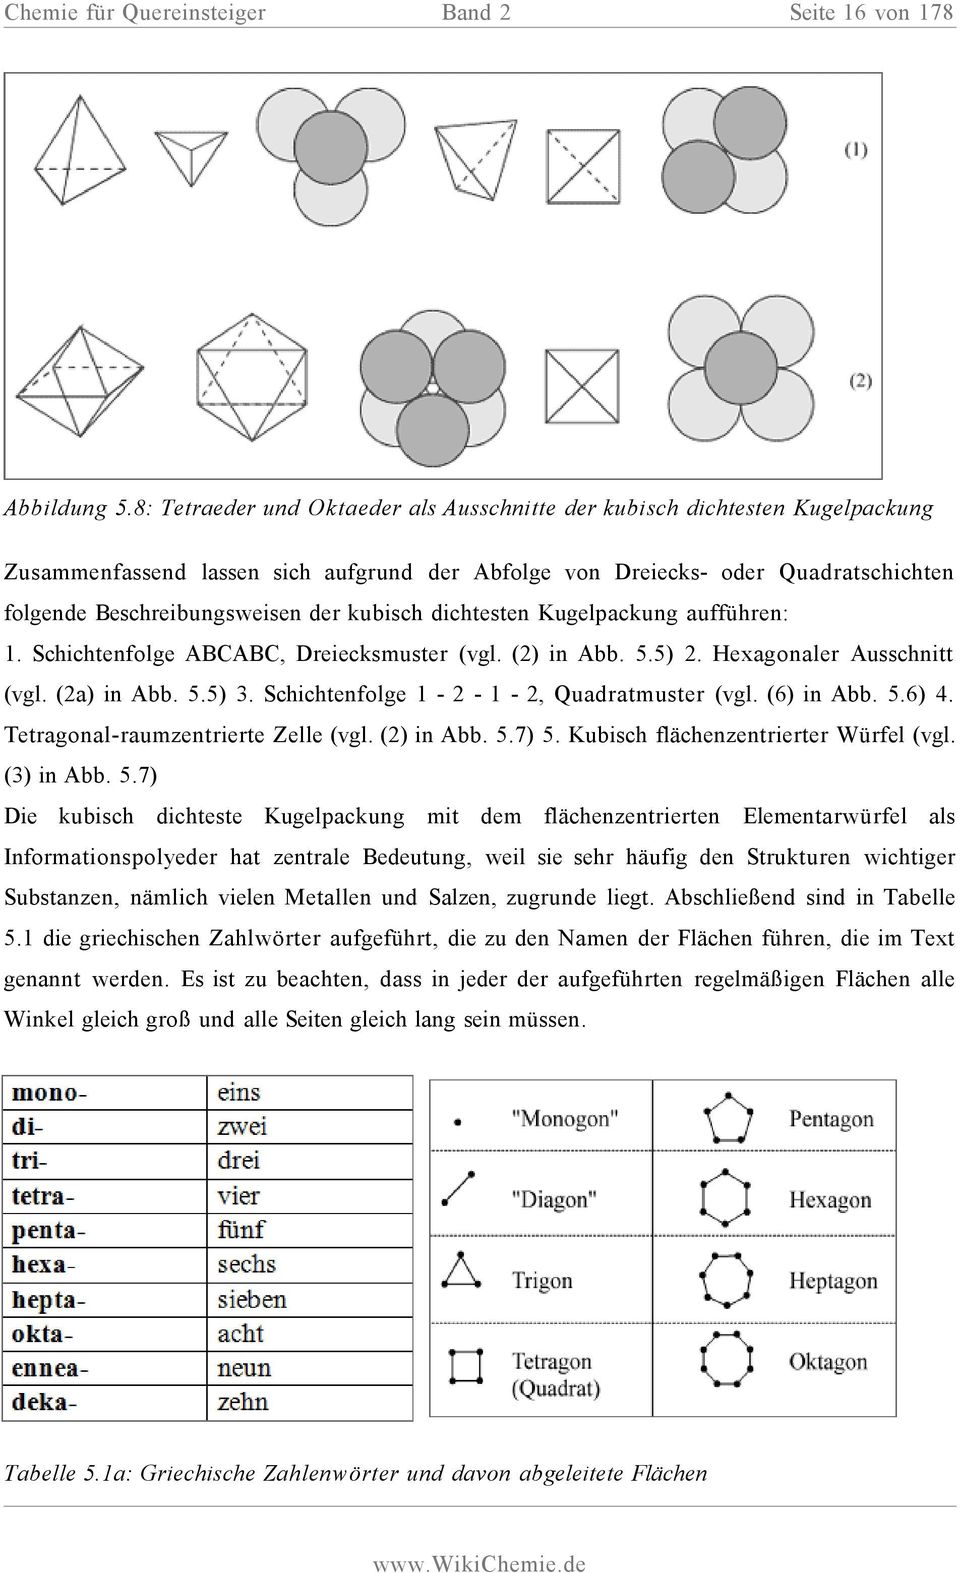 kubisch dichtesten Kugelpackung aufführen: 1. Schichtenfolge ABCABC, Dreiecksmuster (vgl. (2) in Abb. 5.5) 2. Hexagonaler Ausschnitt (vgl. (2a) in Abb. 5.5) 3.